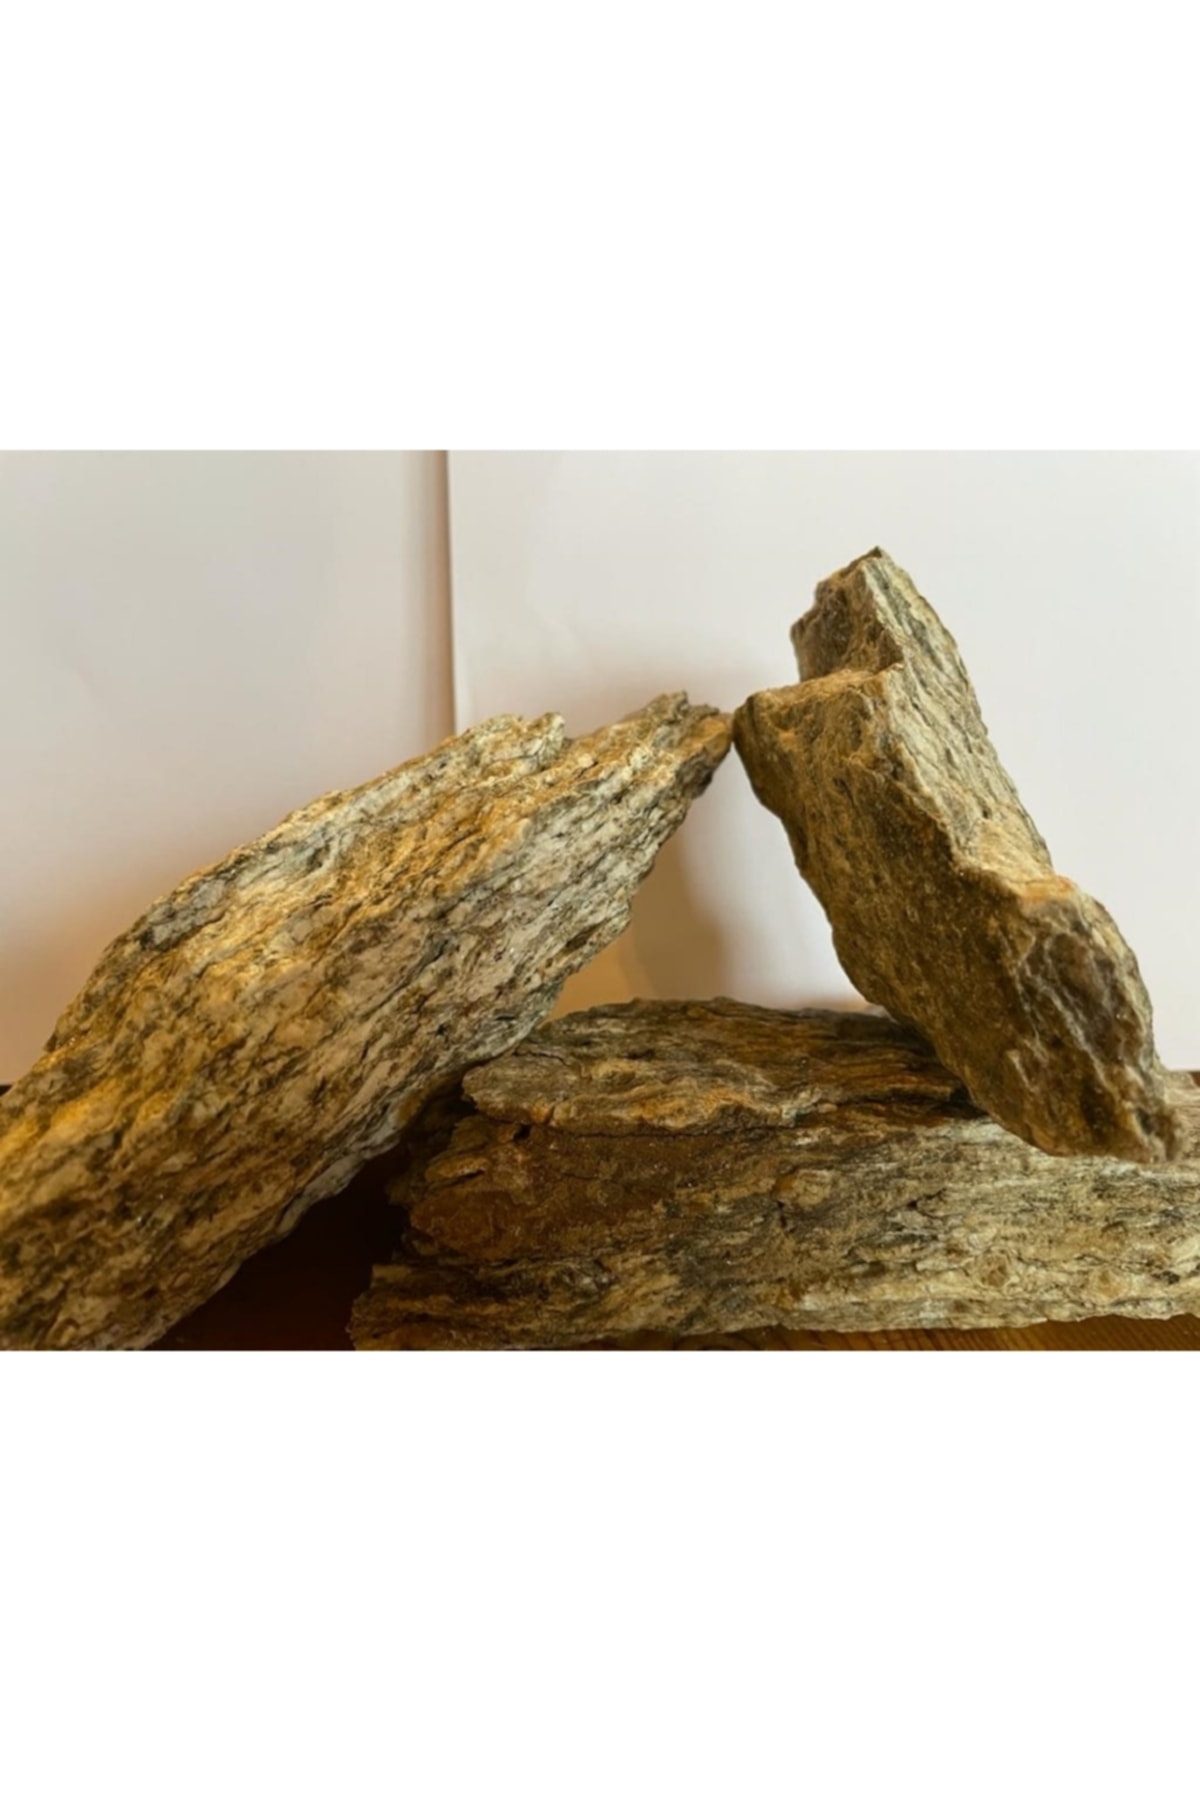 Lorien Gnays , Woodstone , Odun Taşı, Akvaryum Dekorasyon Taşı 15-20 Cm 3 Adet Doğal Taş